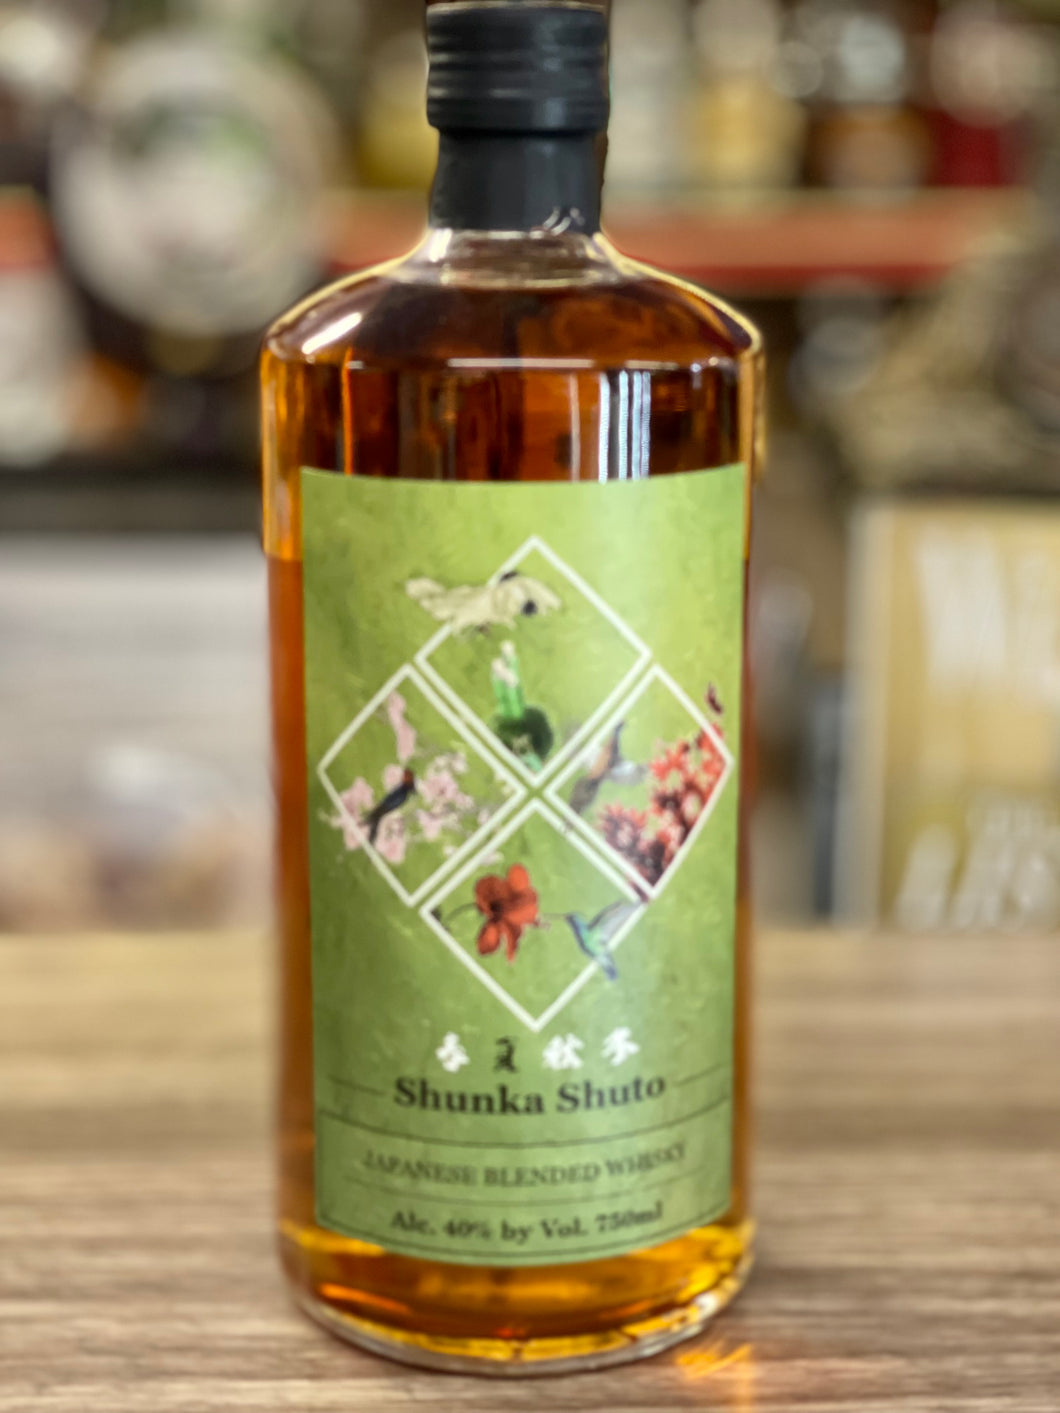 Shunka Shuto Summer Edition Japanes Blended Whisky